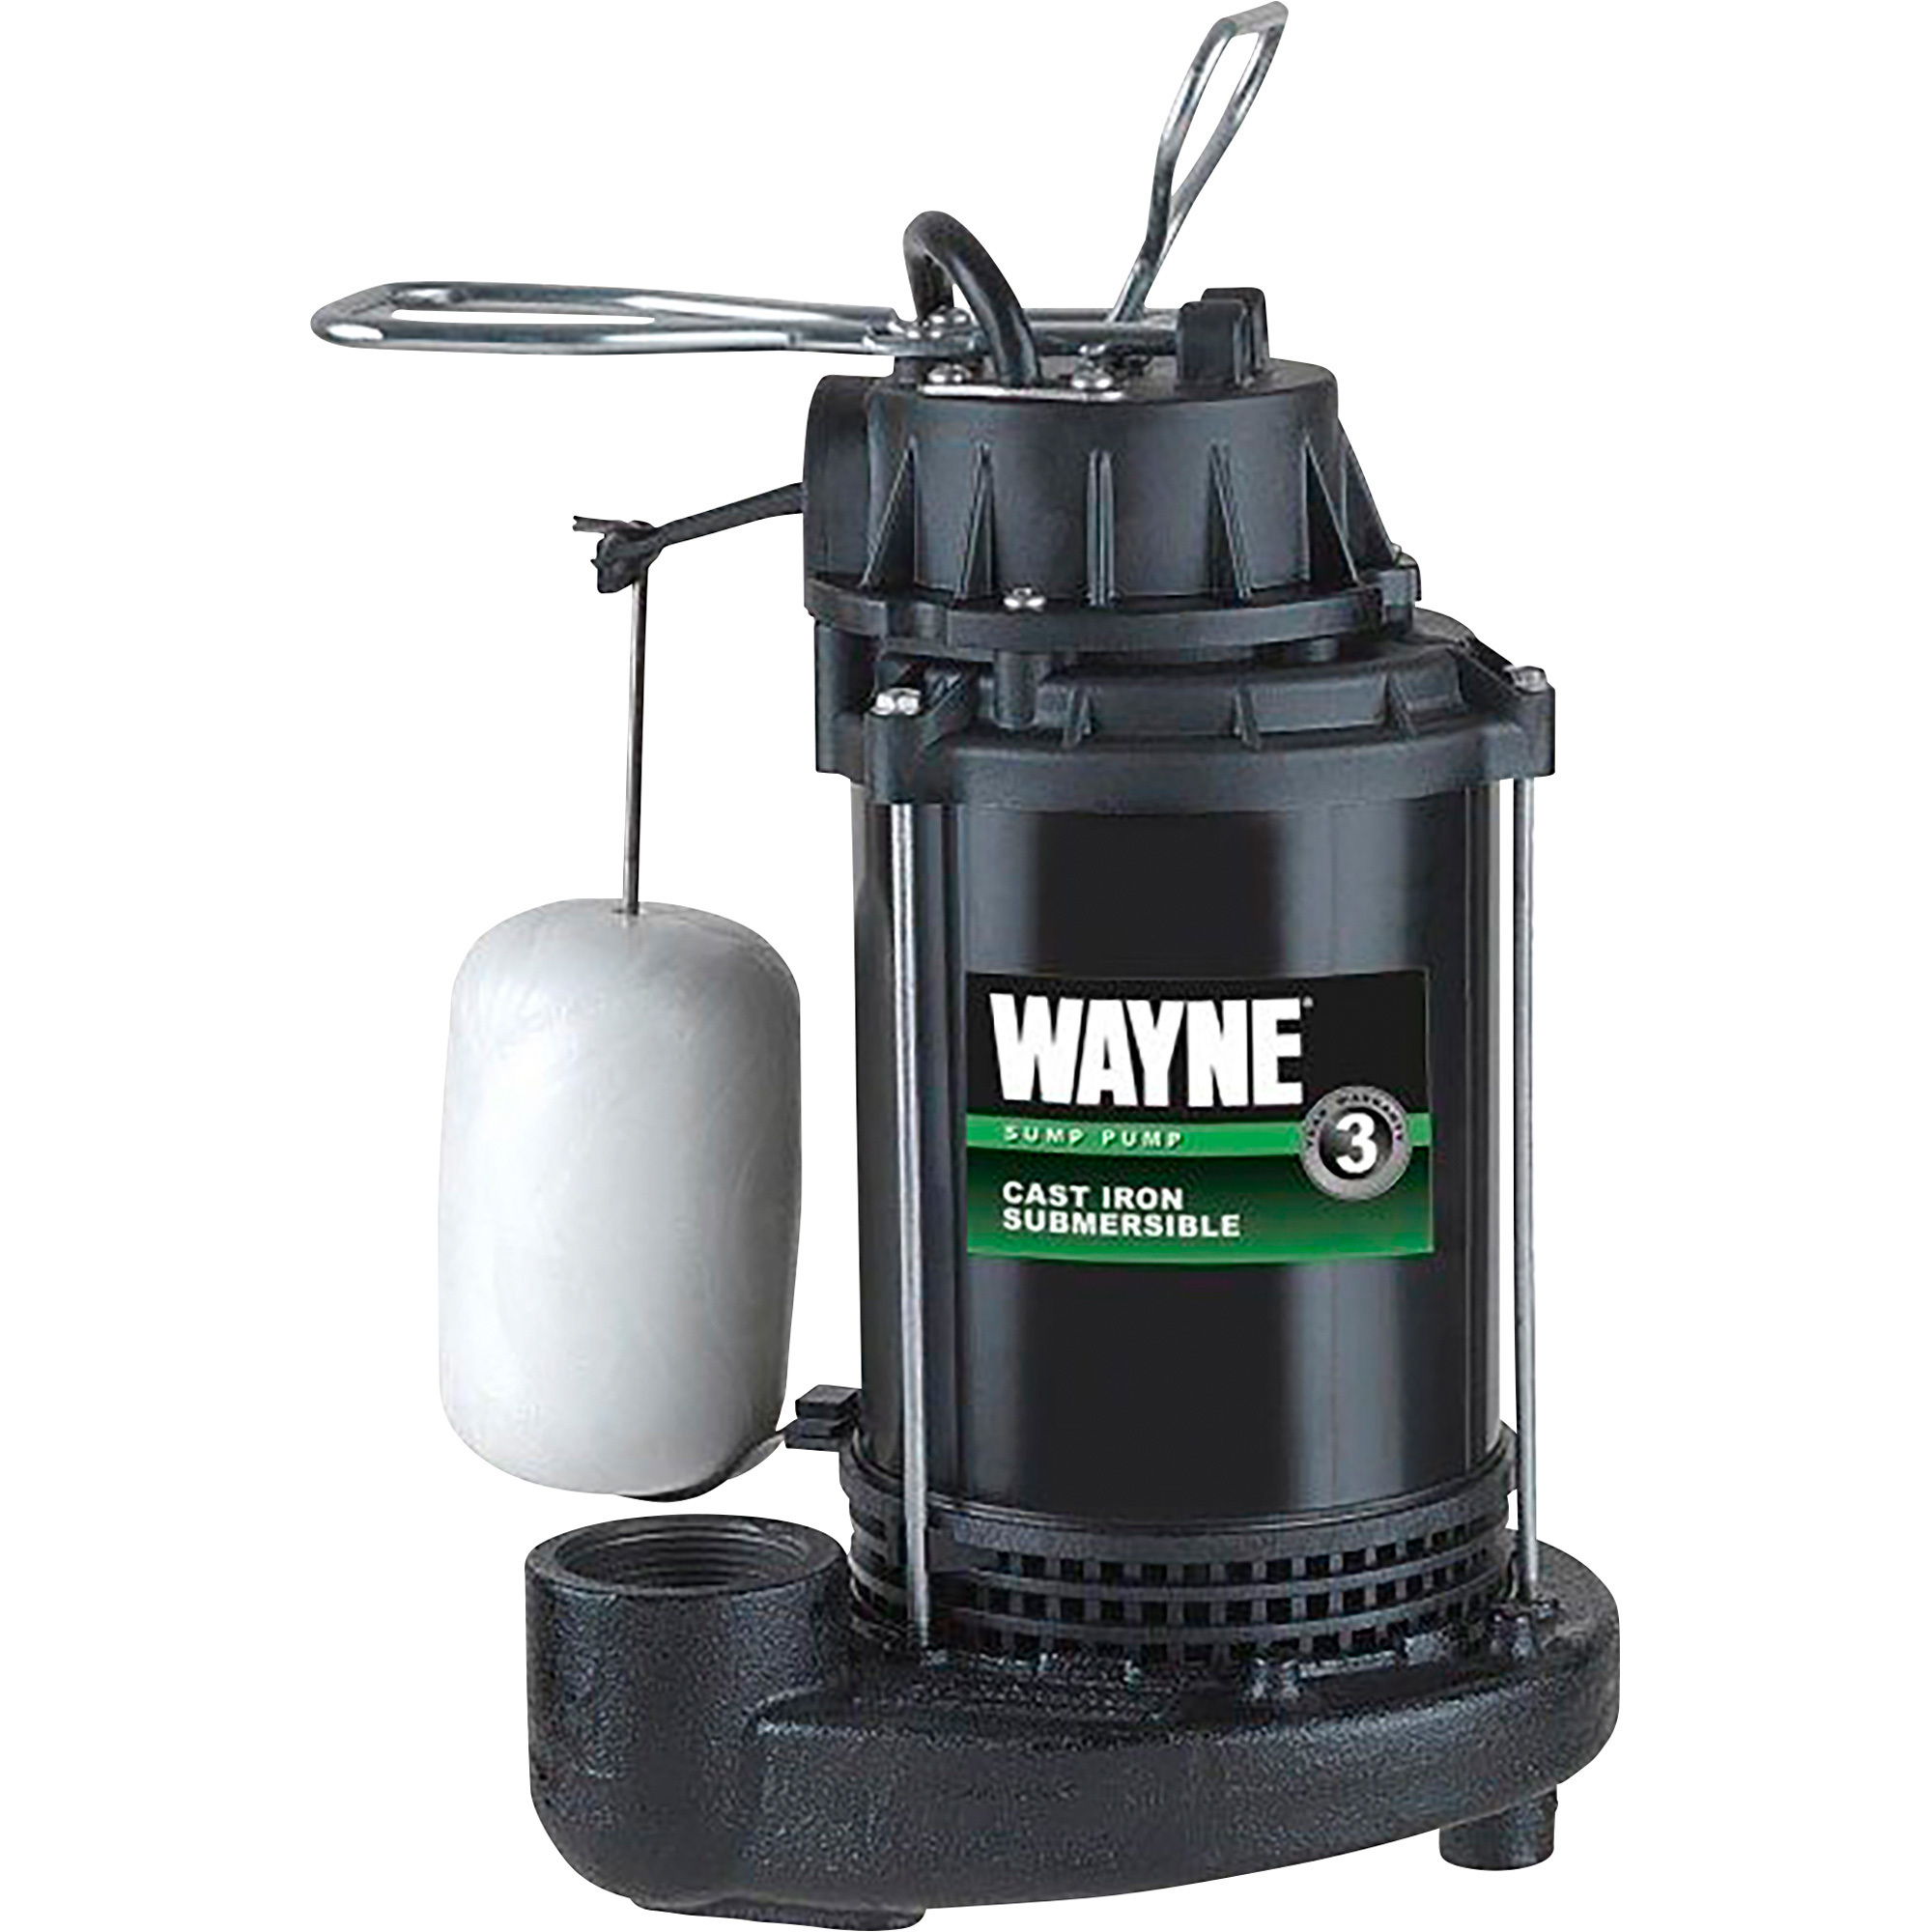 Wayne Cast Iron Submersible Sump Pump â 4600 GPH, 1/3 HP, 1 1/2Inch, Model CDU790